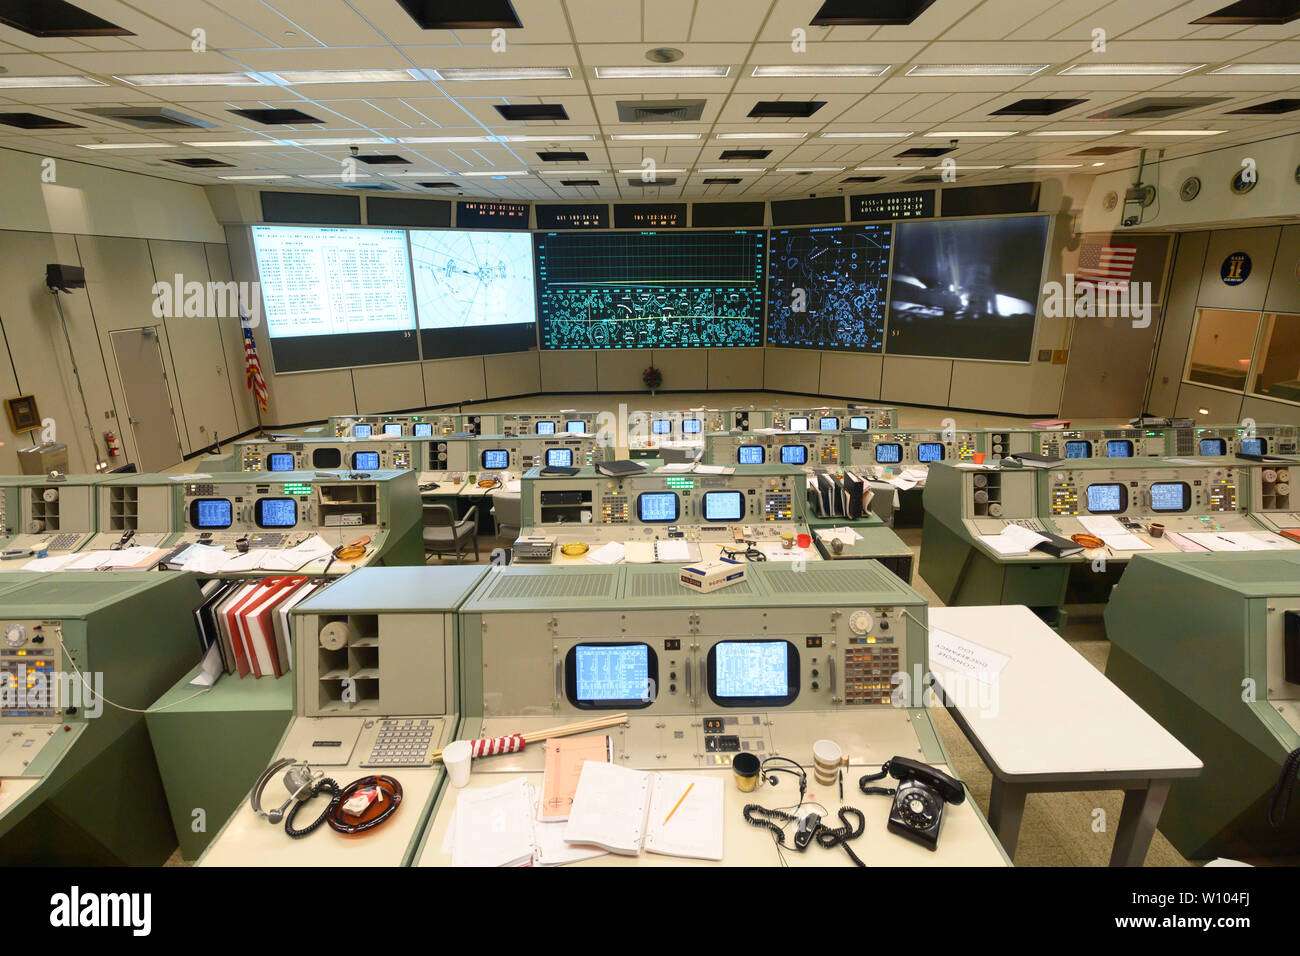 Centre de contrôle de mission au Centre spatial Johnson de la NASA Clear Lake près de Houston, Texas, récemment restauré dans sa version 1960 pour commémorer le 50e anniversaire de l'homme premiers pas sur la lune en juillet 1969 par les astronautes d'Apollo 11. Après son lancement depuis le Centre spatial Kennedy en Floride, l'alunissage d'Apollo 11 et le retour sur terre était contrôlé à partir de ce site. Banque D'Images